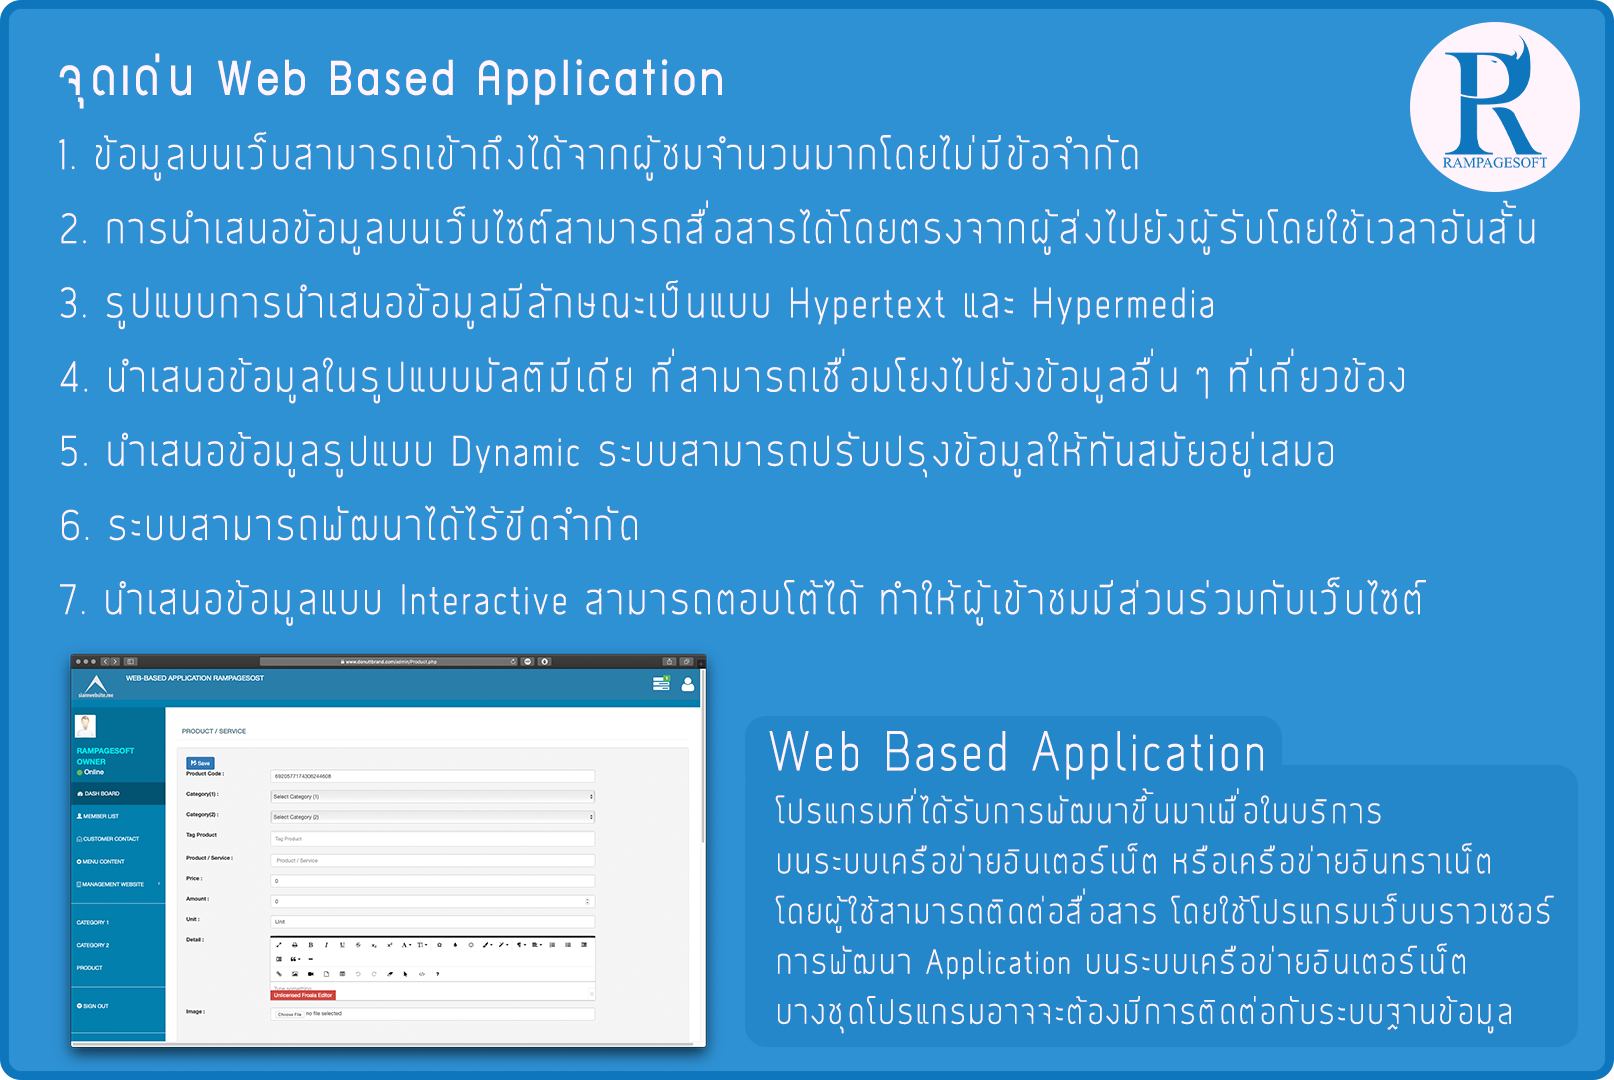 รับทําเว็บไซต์ เว็บขยายสายงาน Web Based Application | TTT-WEBSITE 